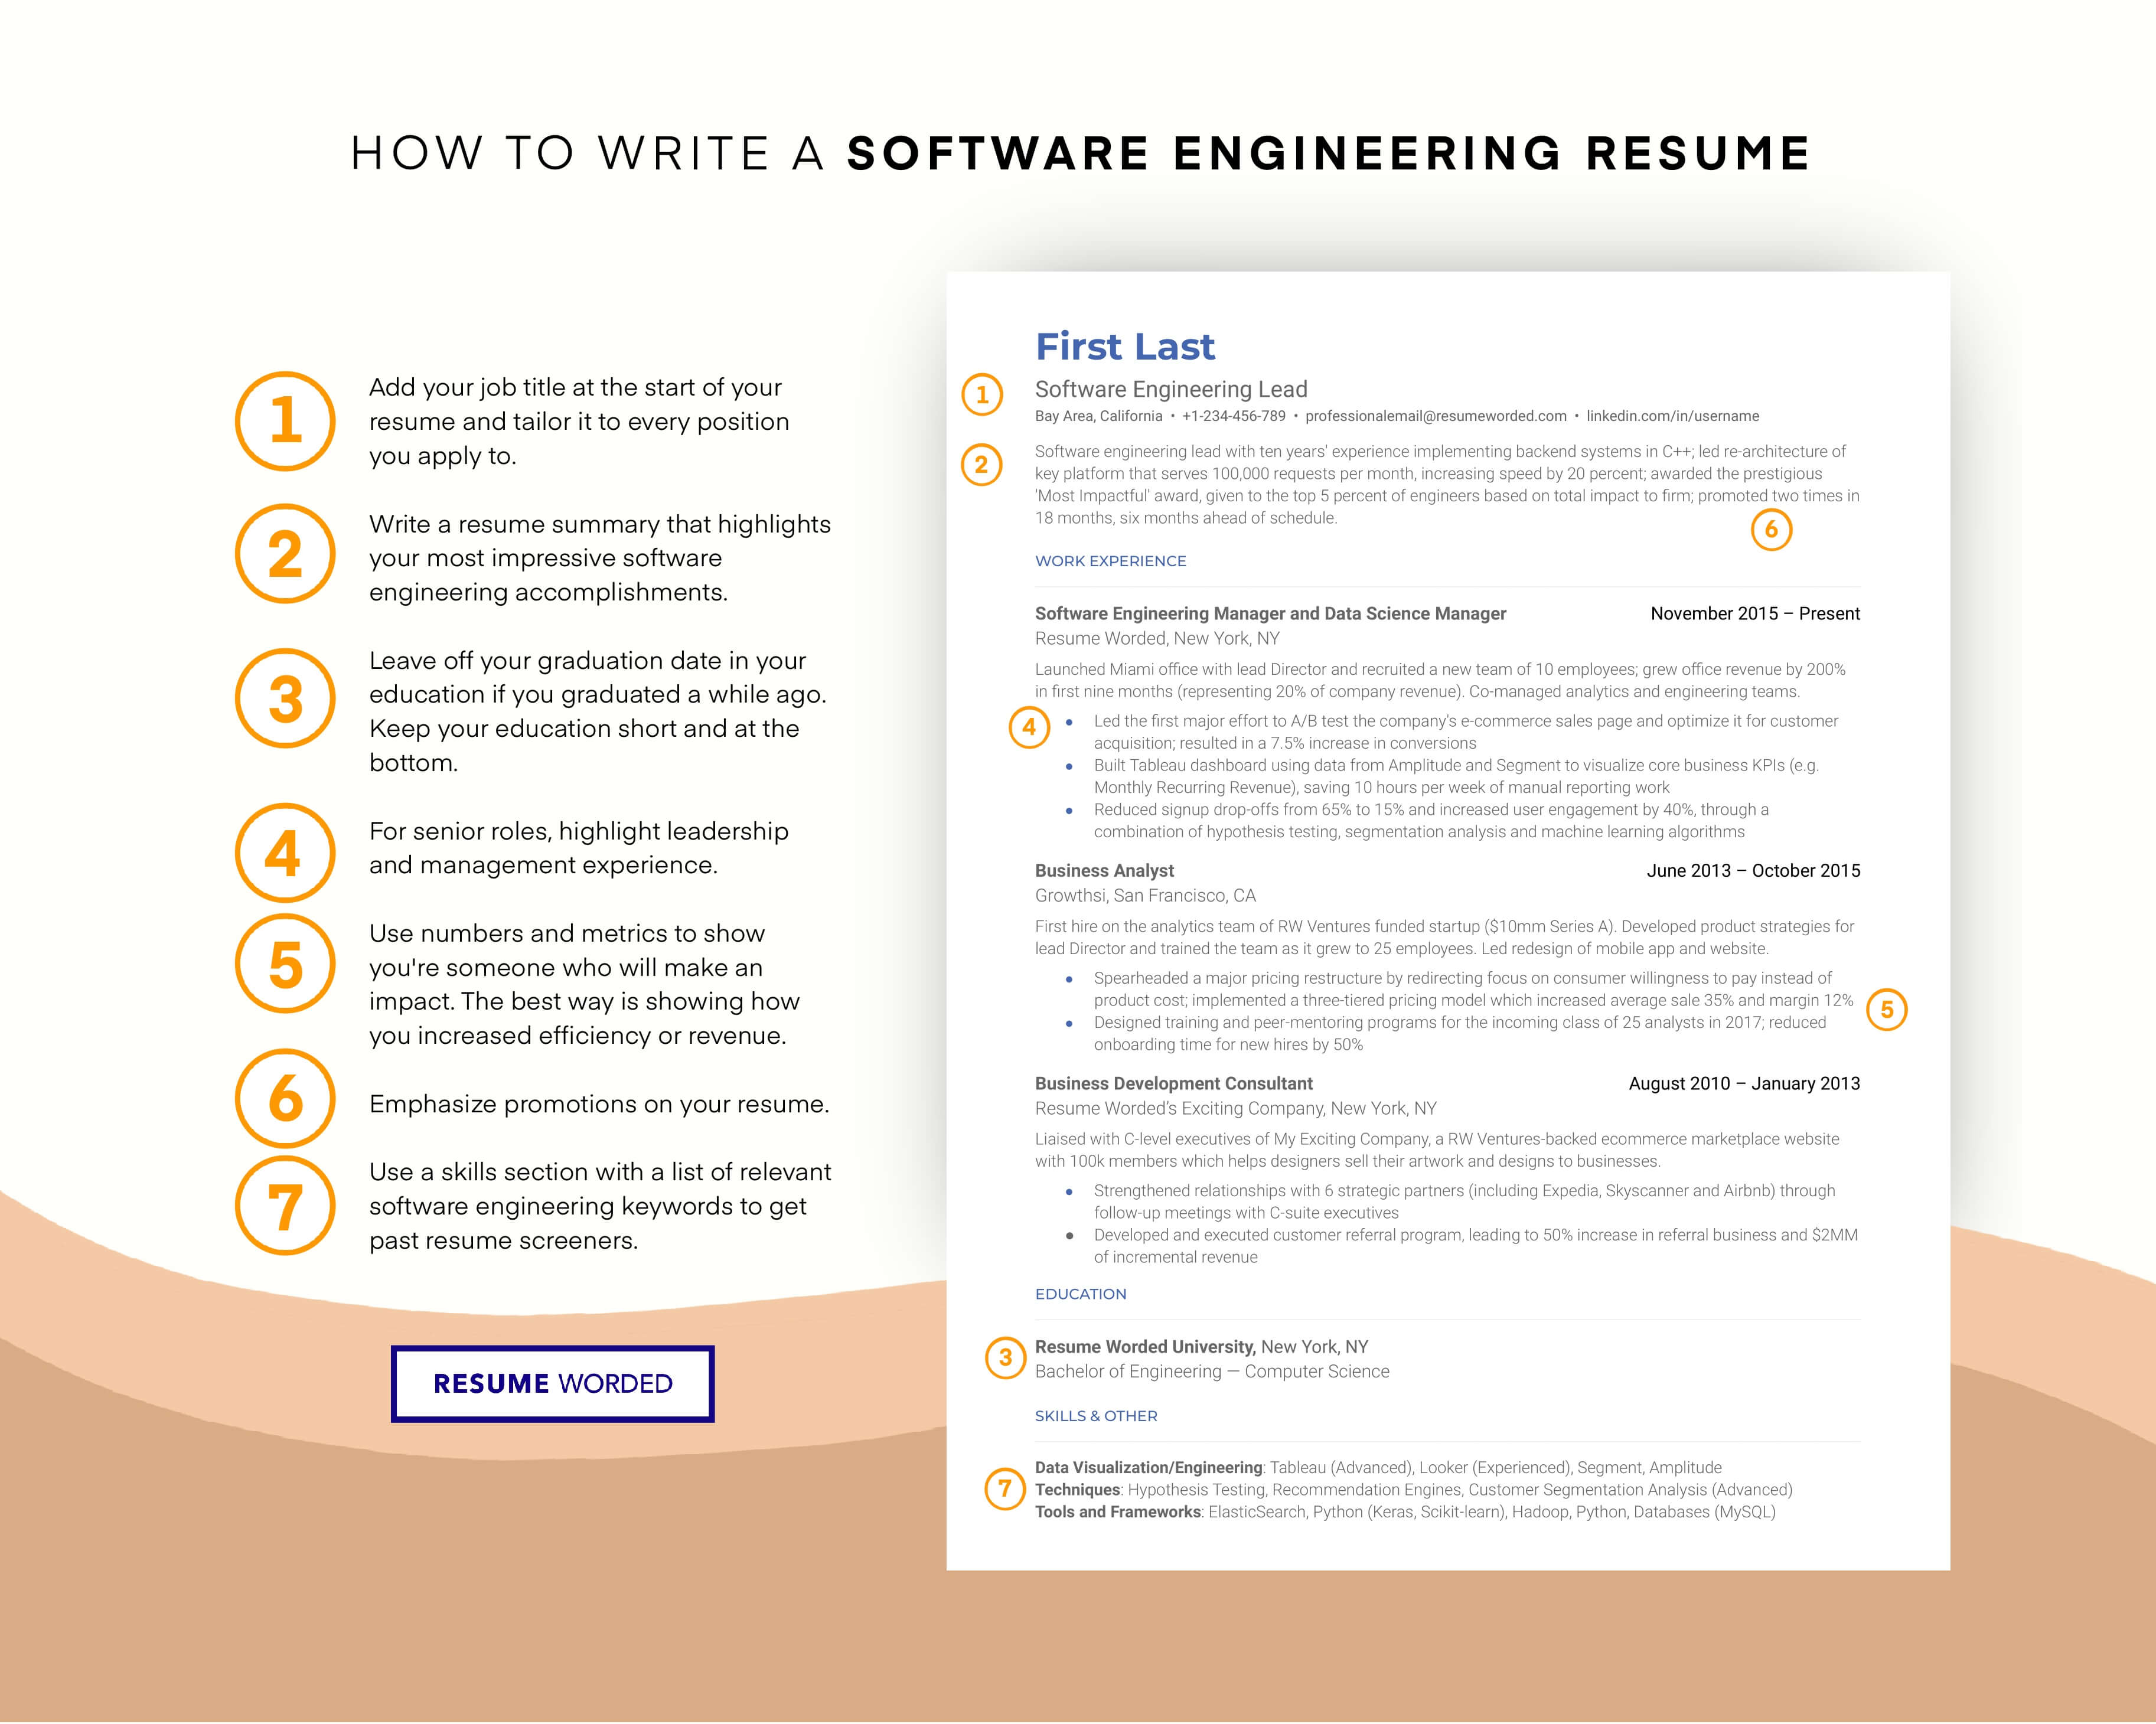 Use software developer keywords. - Azure Developer Resume